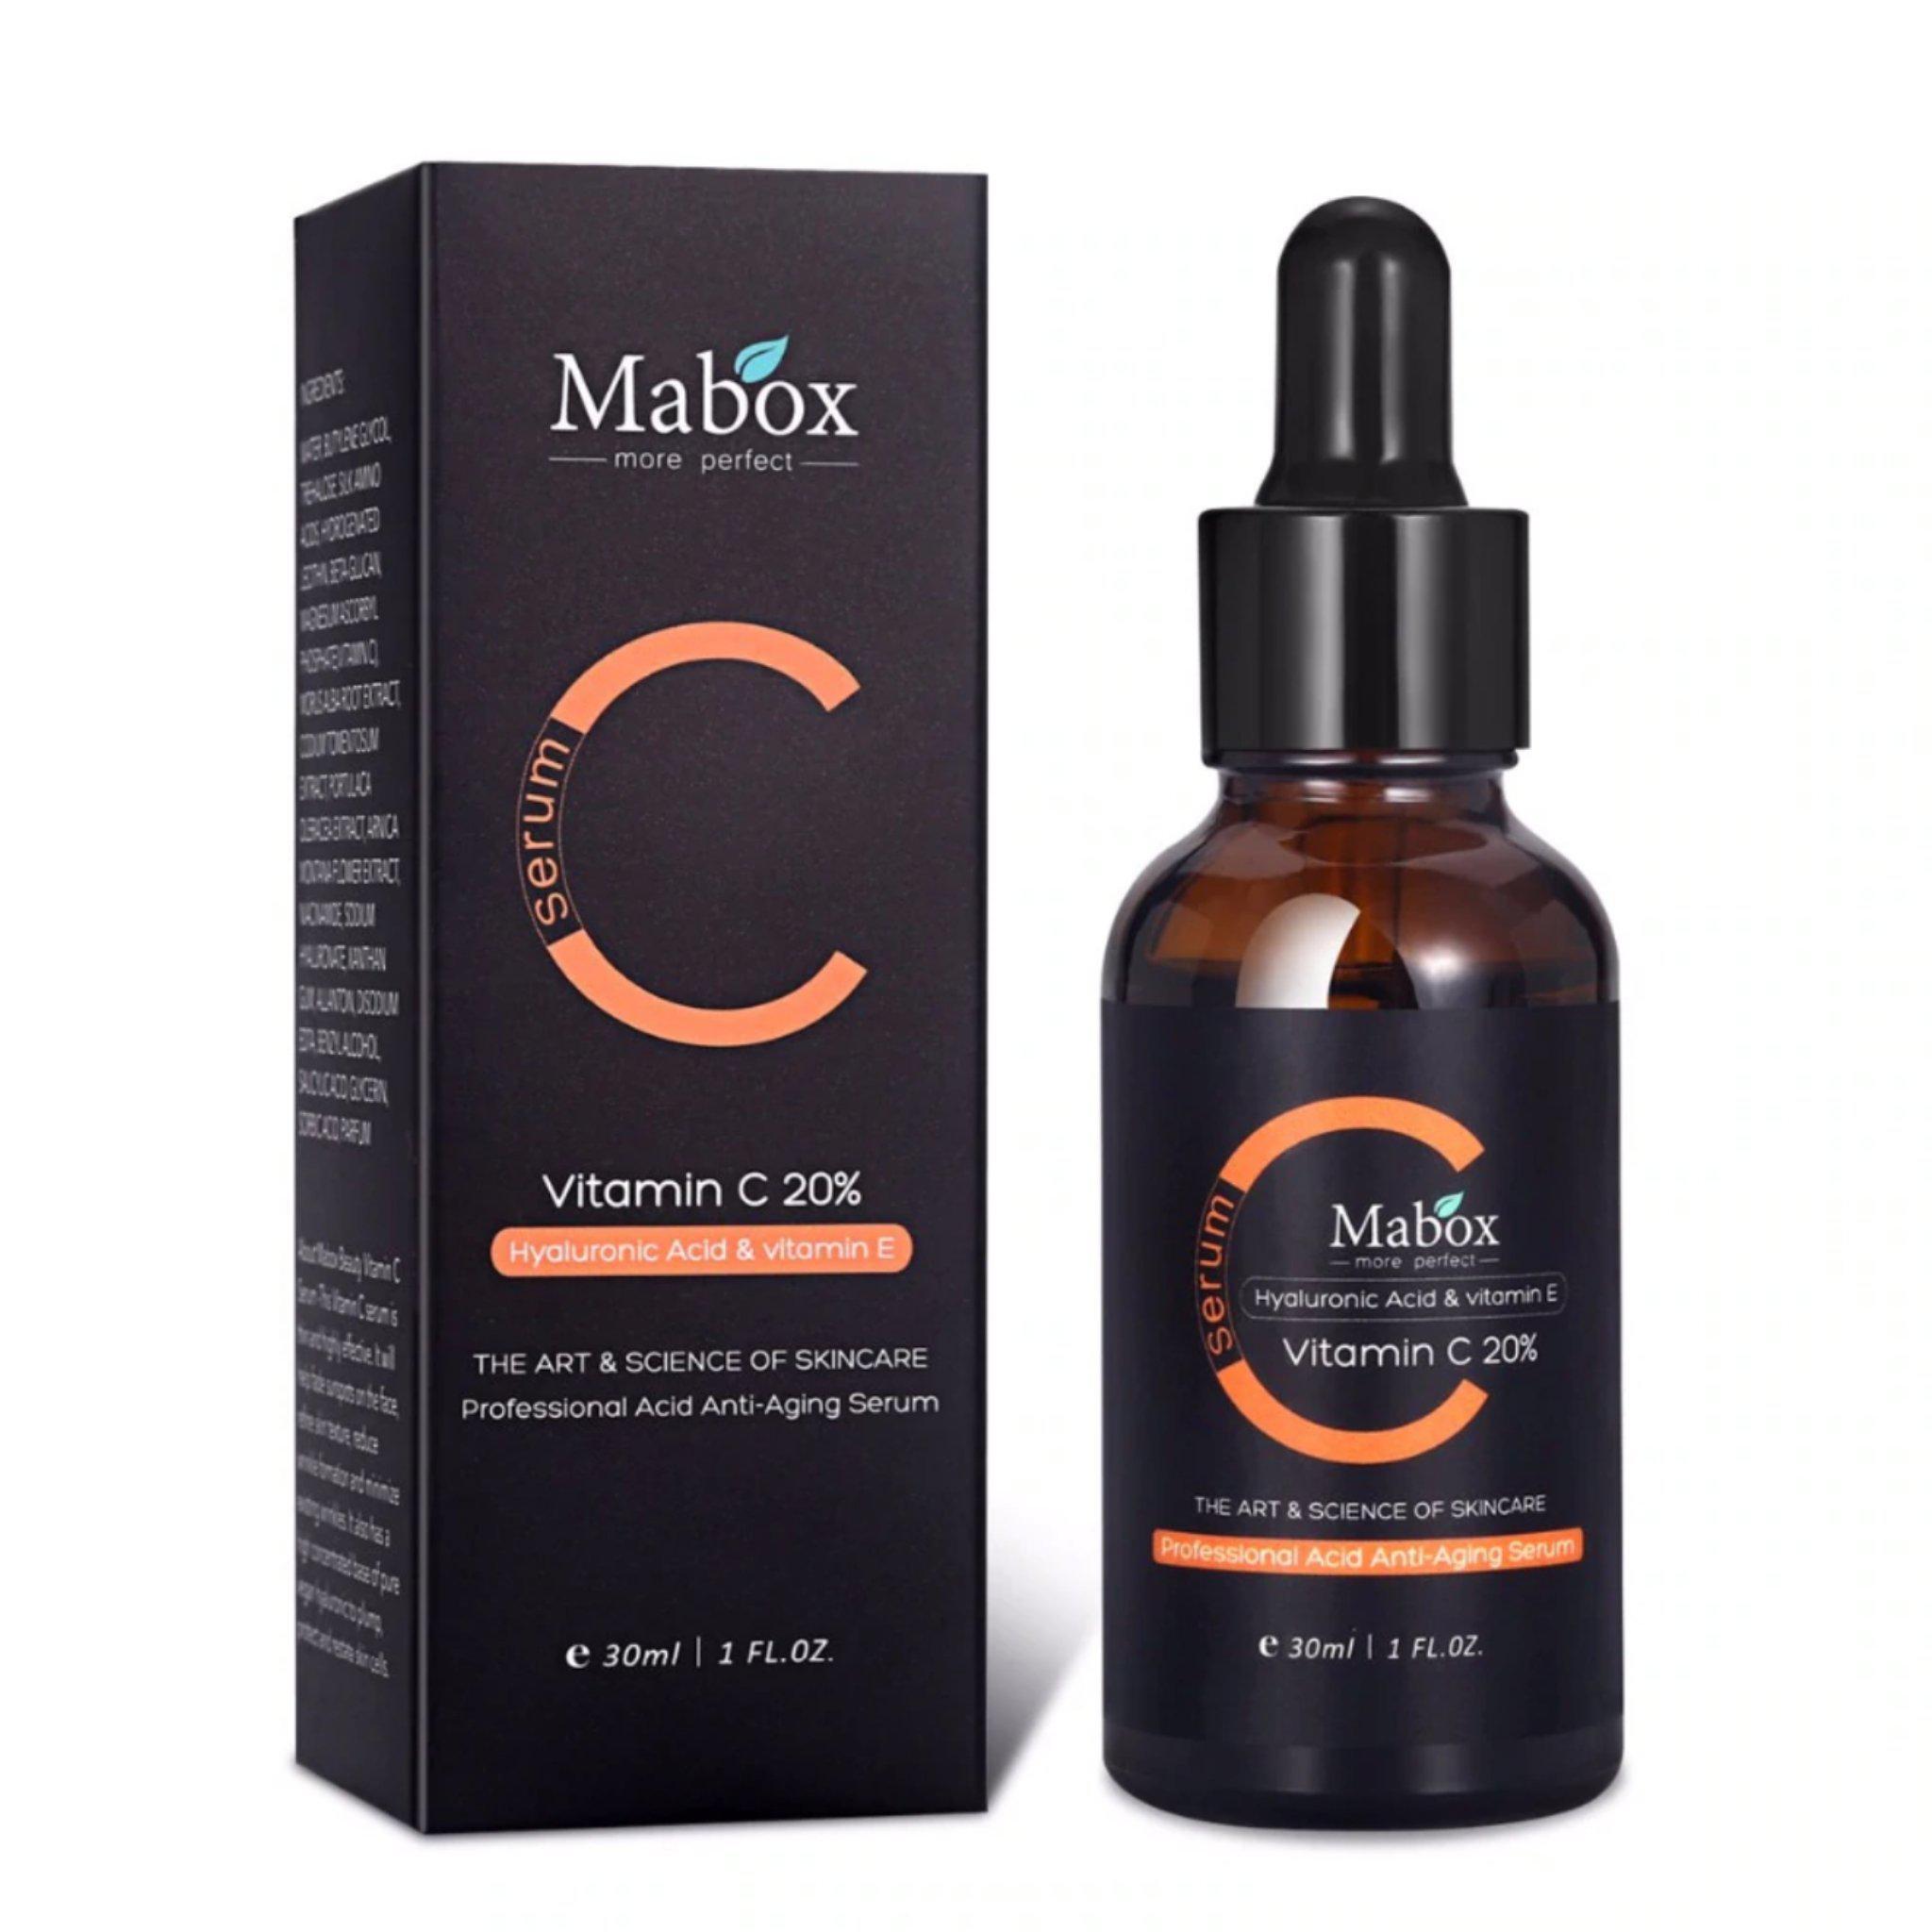 Mabox Vitamin C Serum Review